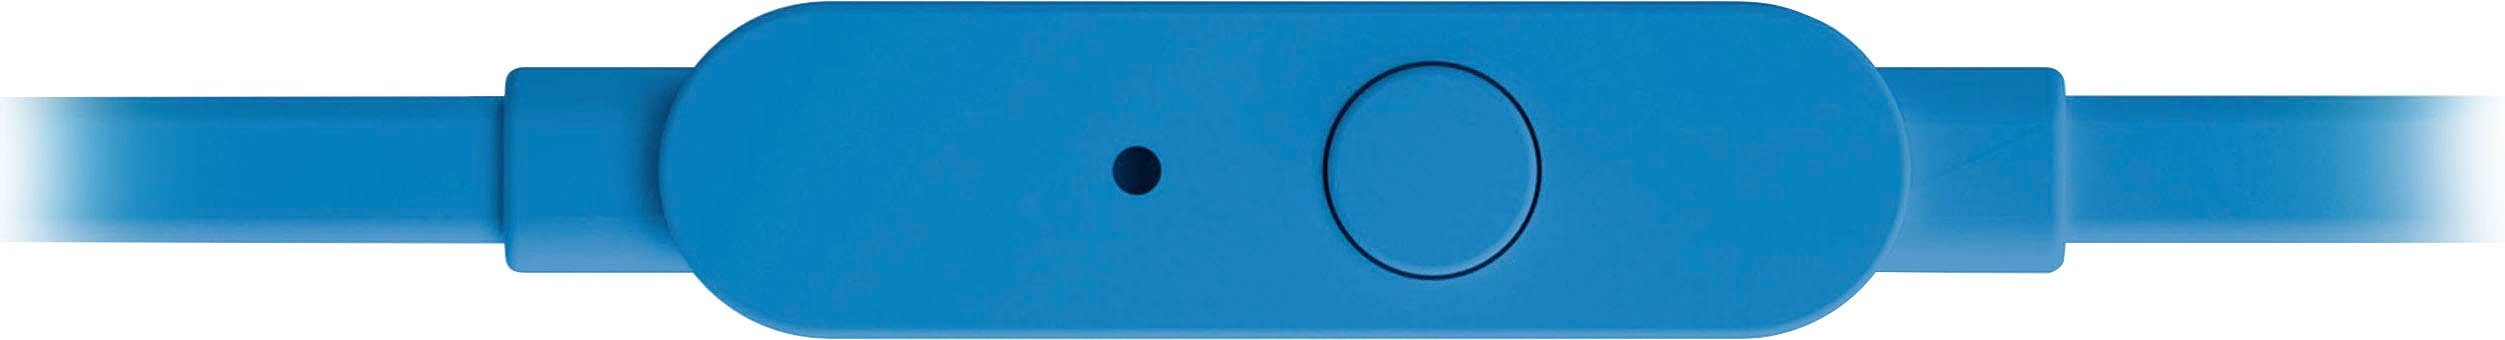 T110 blau JBL In-Ear-Kopfhörer